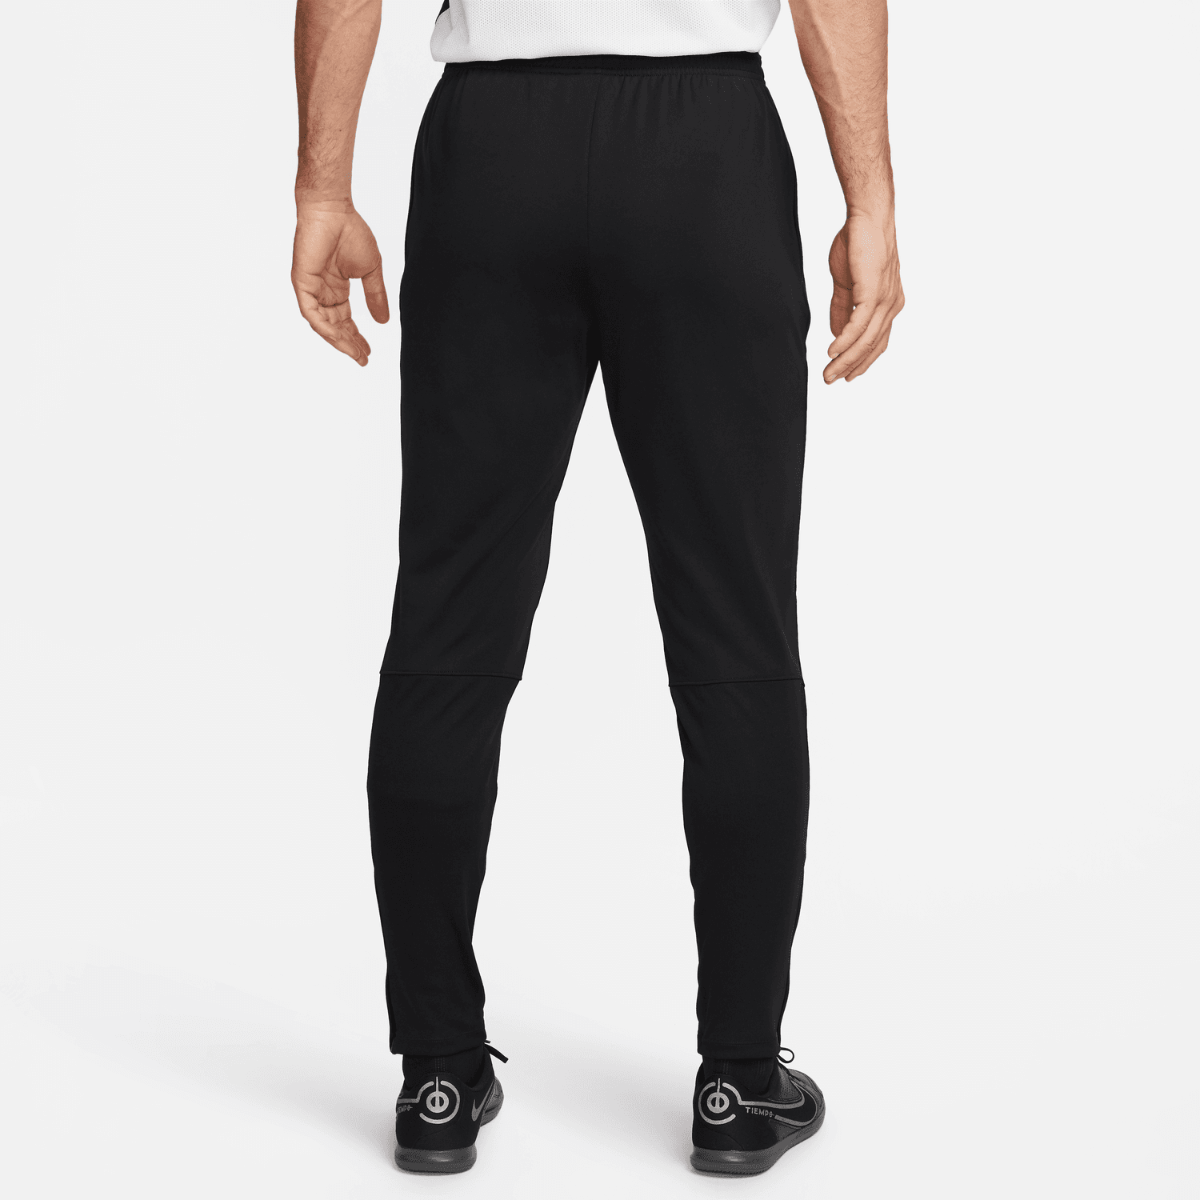 Pantalon Nike Therma-Fit Academy - Noir/Blanc